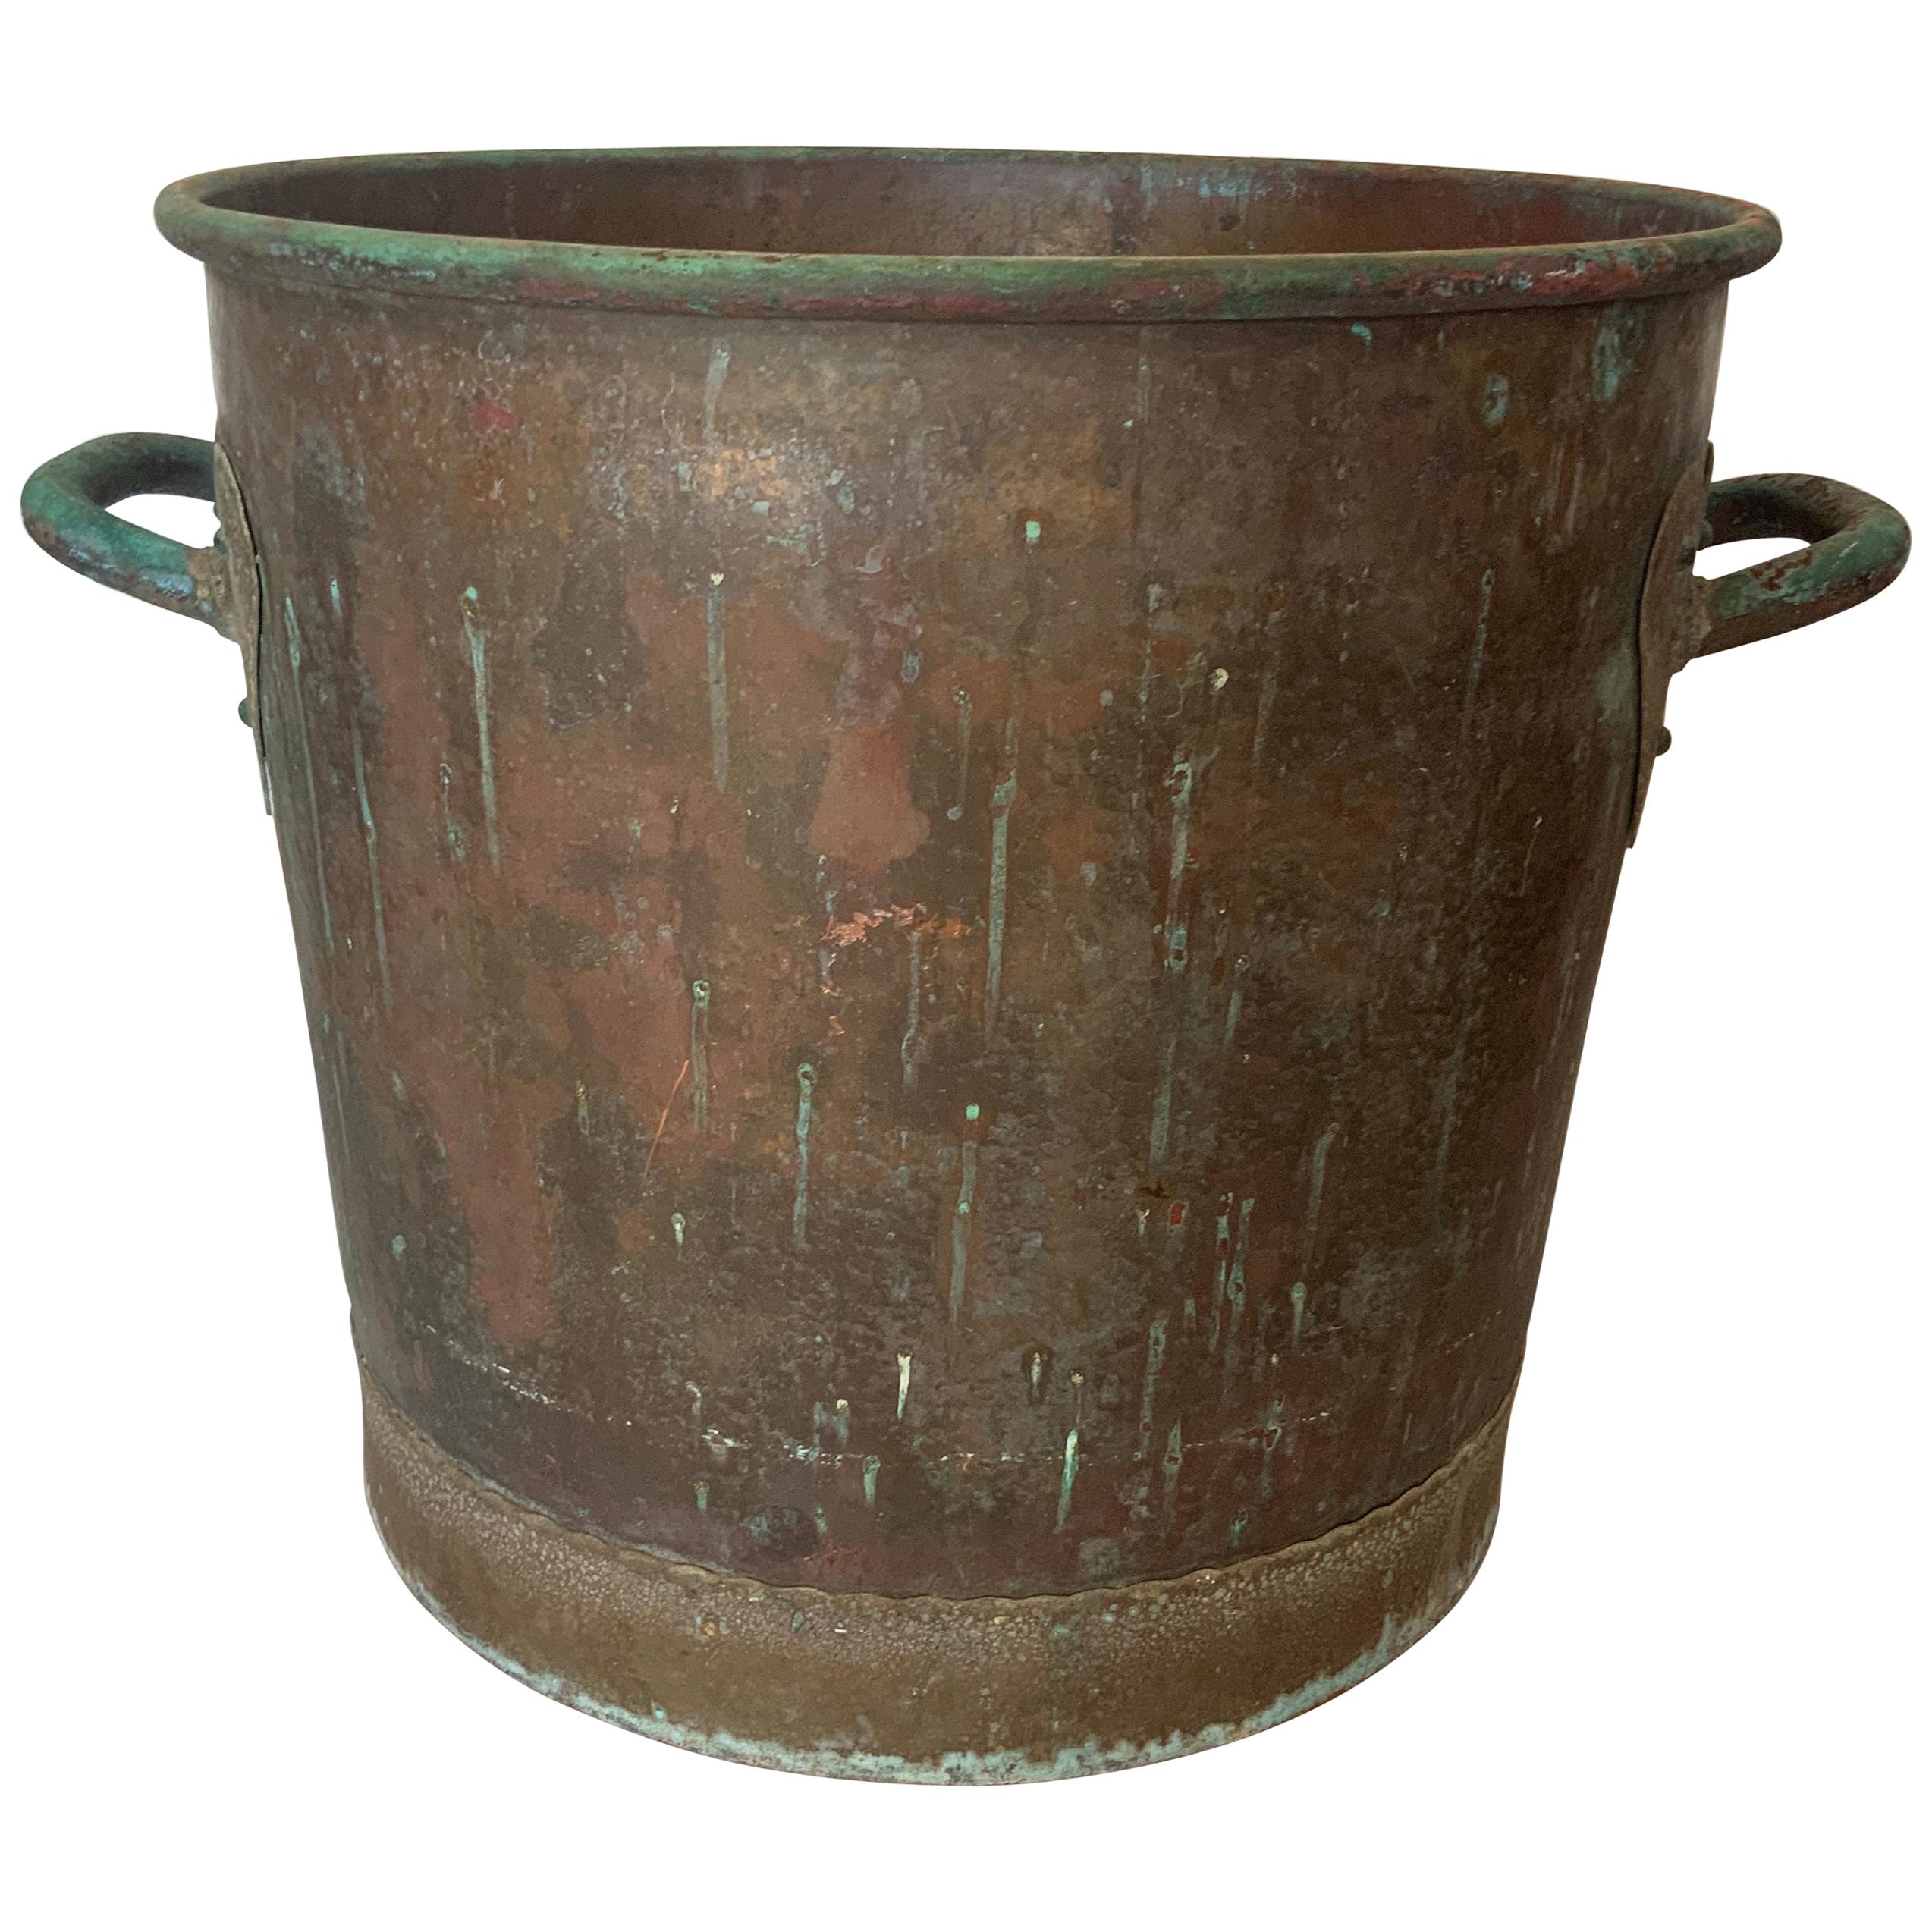 Hammered Copper Cauldron or Garden Planter or Coal or Log Pot